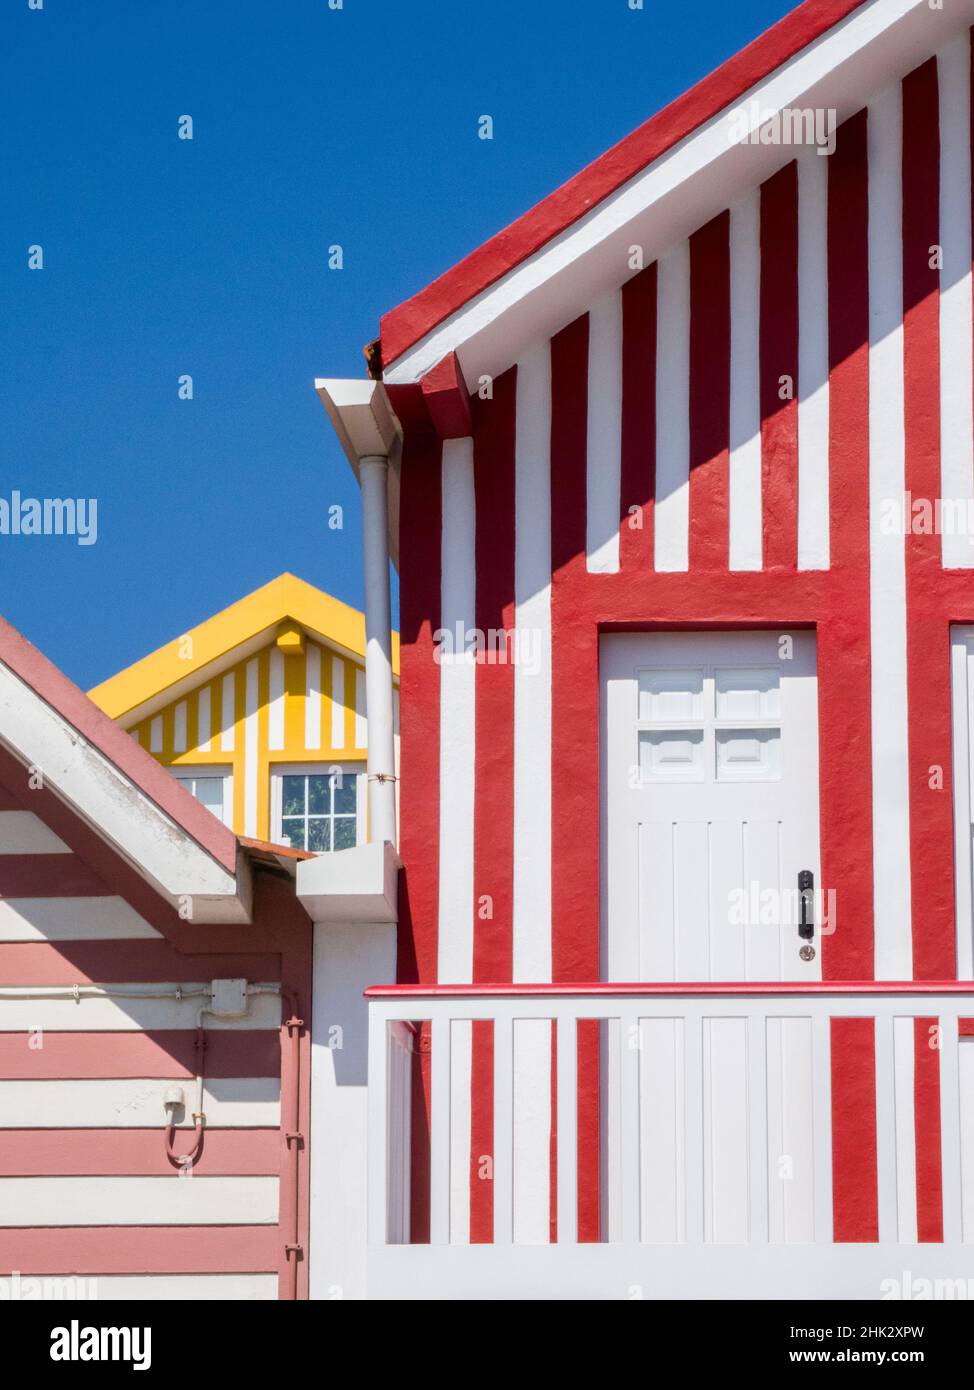 Portugal, Costa Nova.Chalets de vacances colorés dans le village côtier de la plage Costa Nova près de la ville d'Aveiro. Banque D'Images